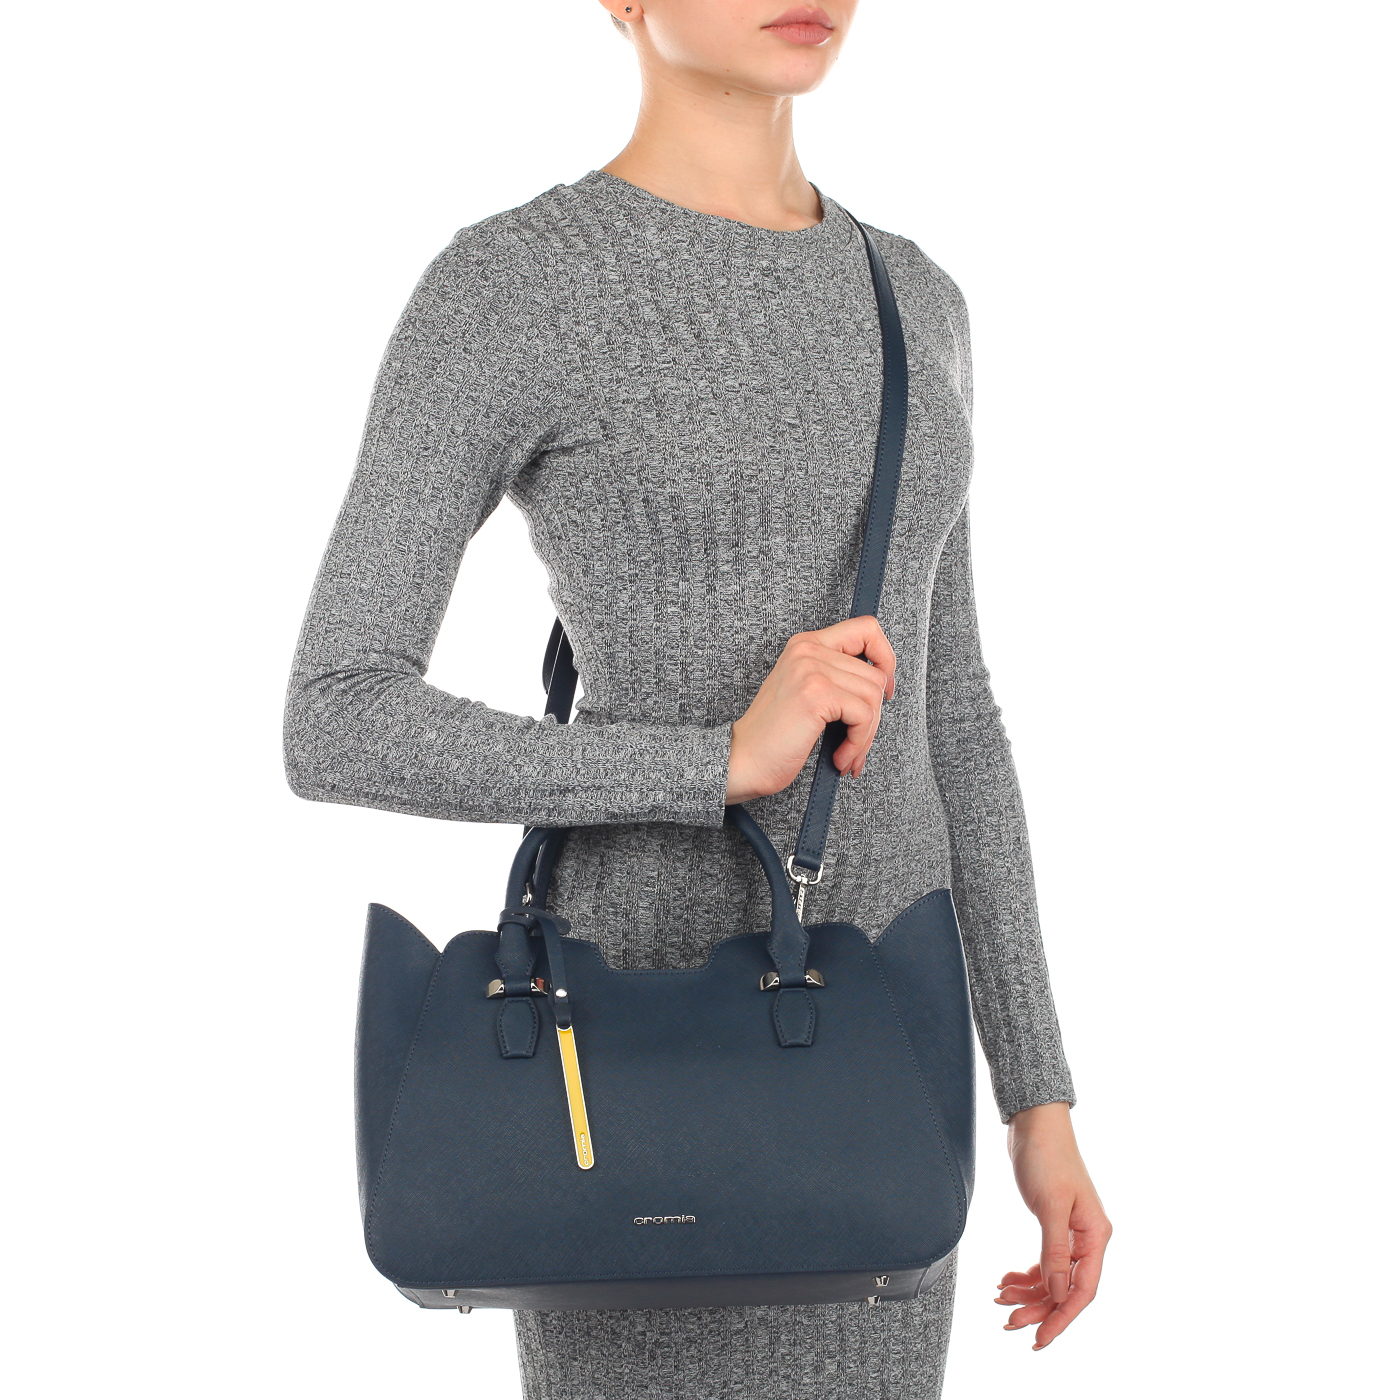 Сафьяновая женская сумка с ручками и плечевым ремешком Cromia Perla